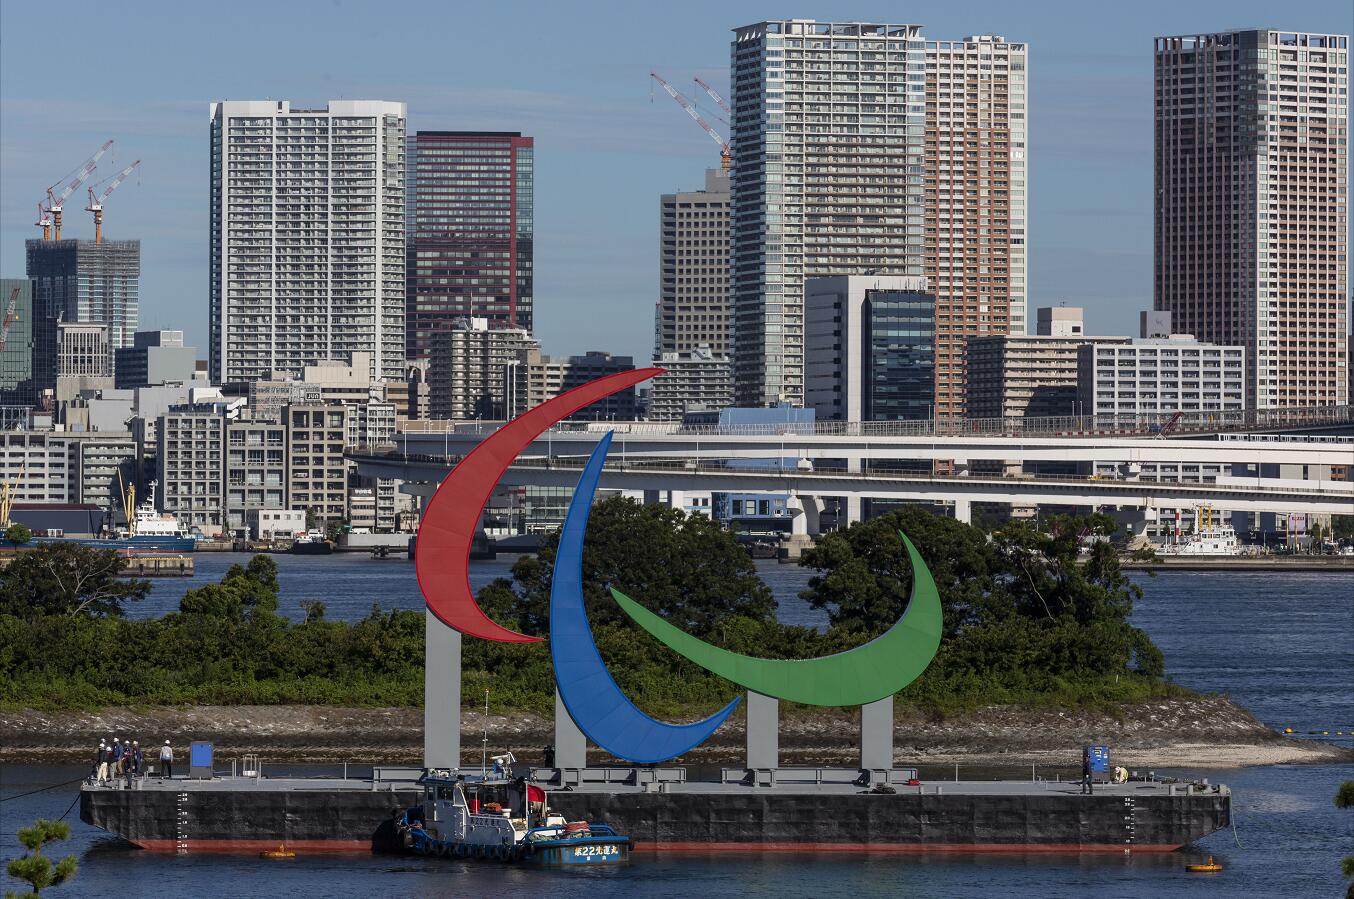 東京考慮將奧運場館轉供醫療使用